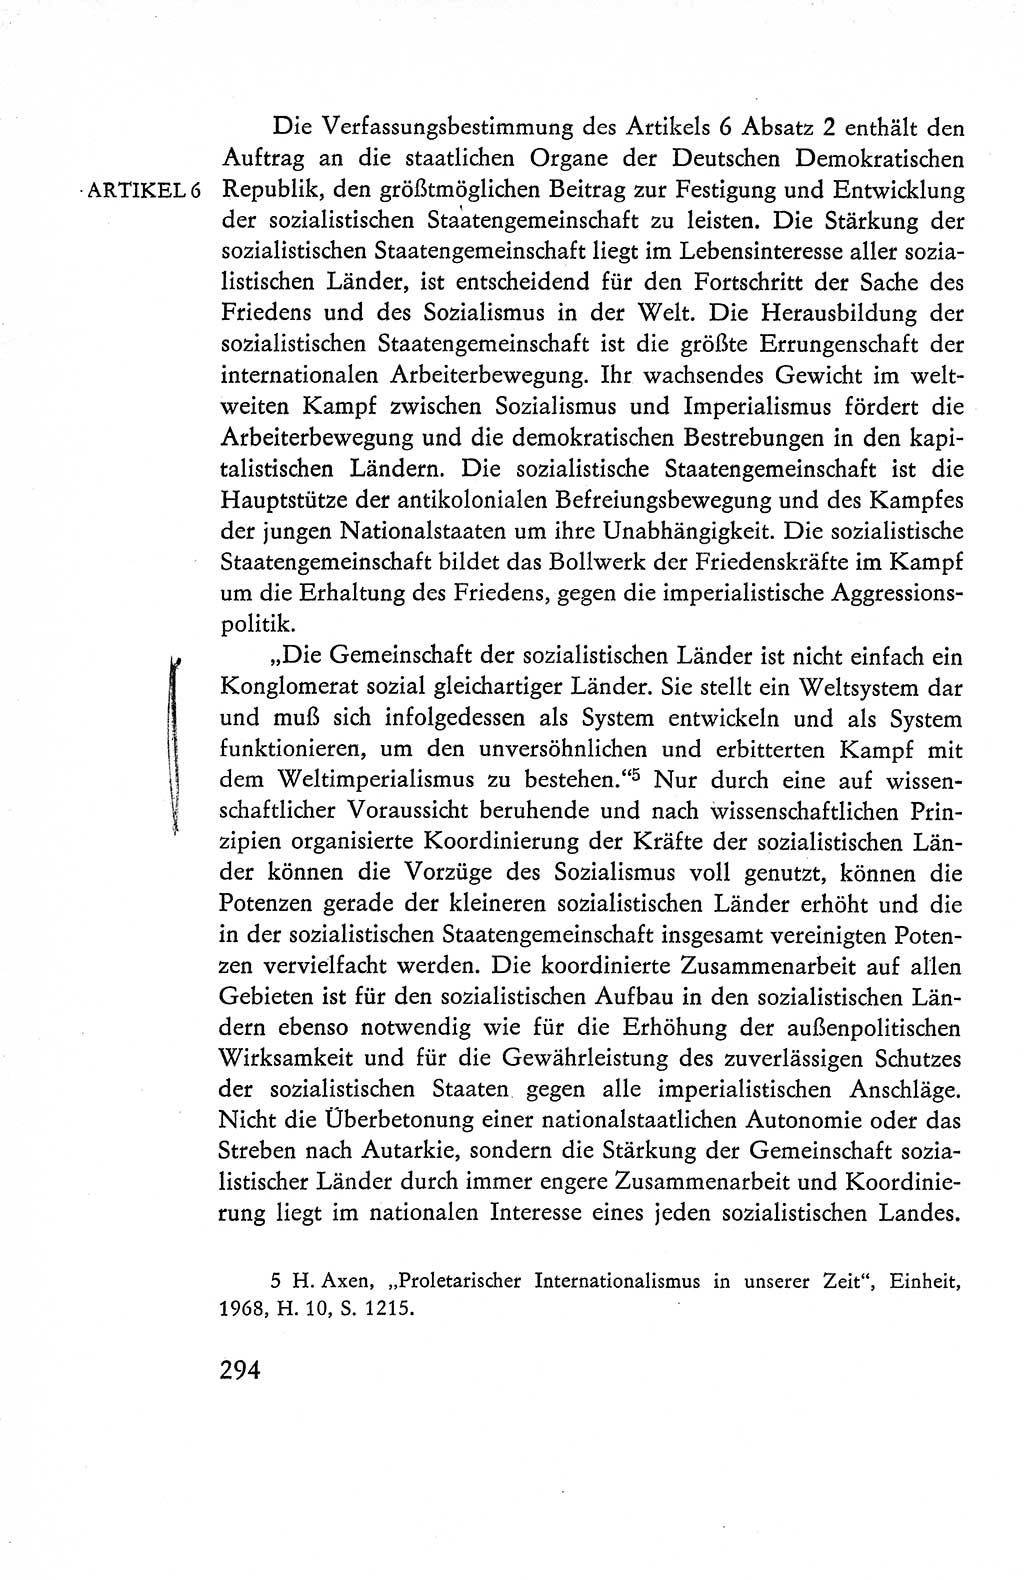 Verfassung der Deutschen Demokratischen Republik (DDR), Dokumente, Kommentar 1969, Band 1, Seite 294 (Verf. DDR Dok. Komm. 1969, Bd. 1, S. 294)